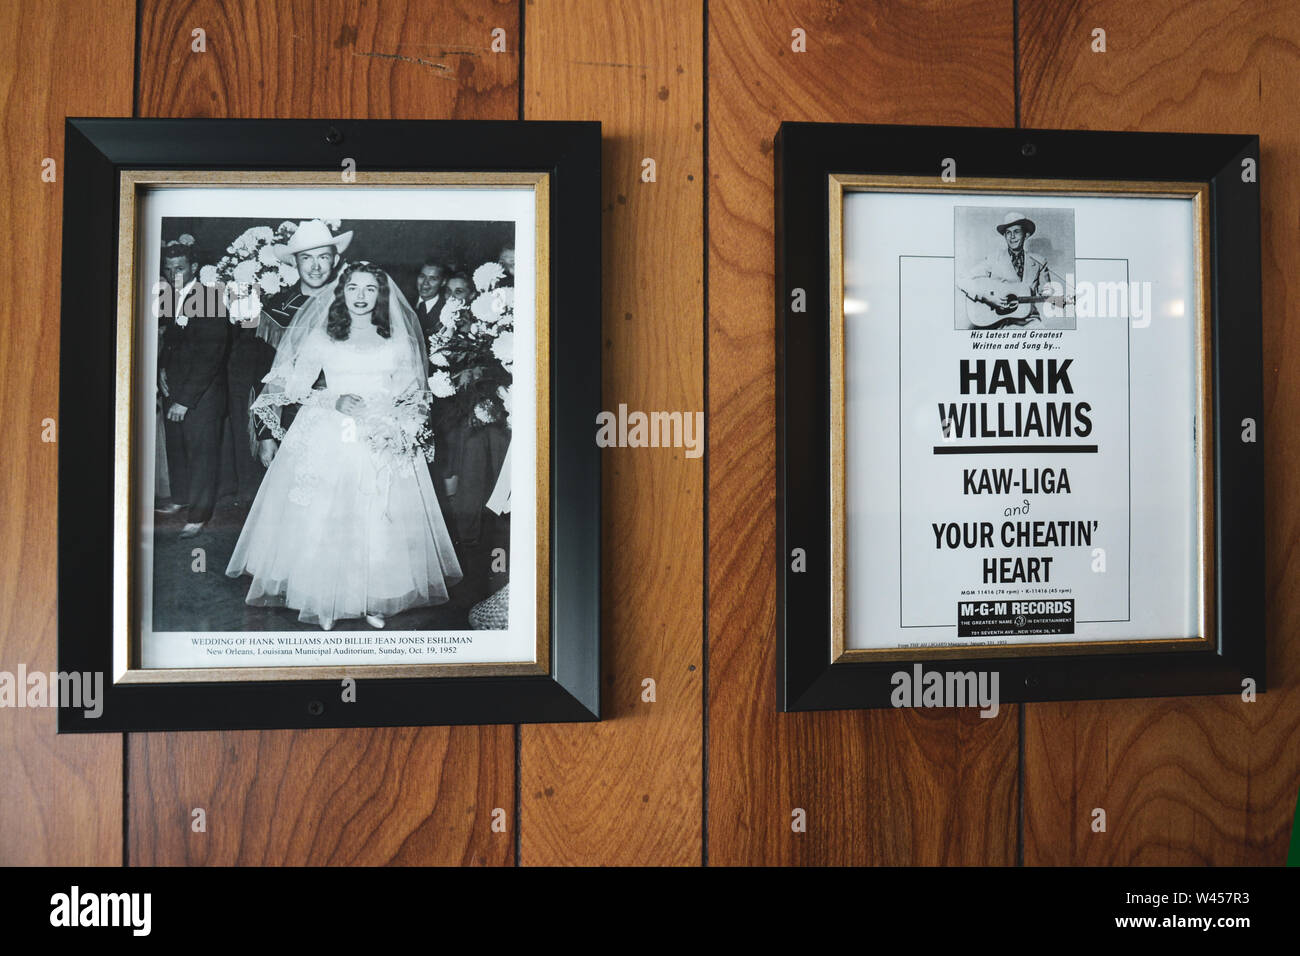 Affiche promotionnelle et photographie de Hank Williams et de sa mariée, Billie Jean, à l'intérieur du célèbre restaurant hotdogs de Chris à Montgomery, AL, Etats-Unis Banque D'Images